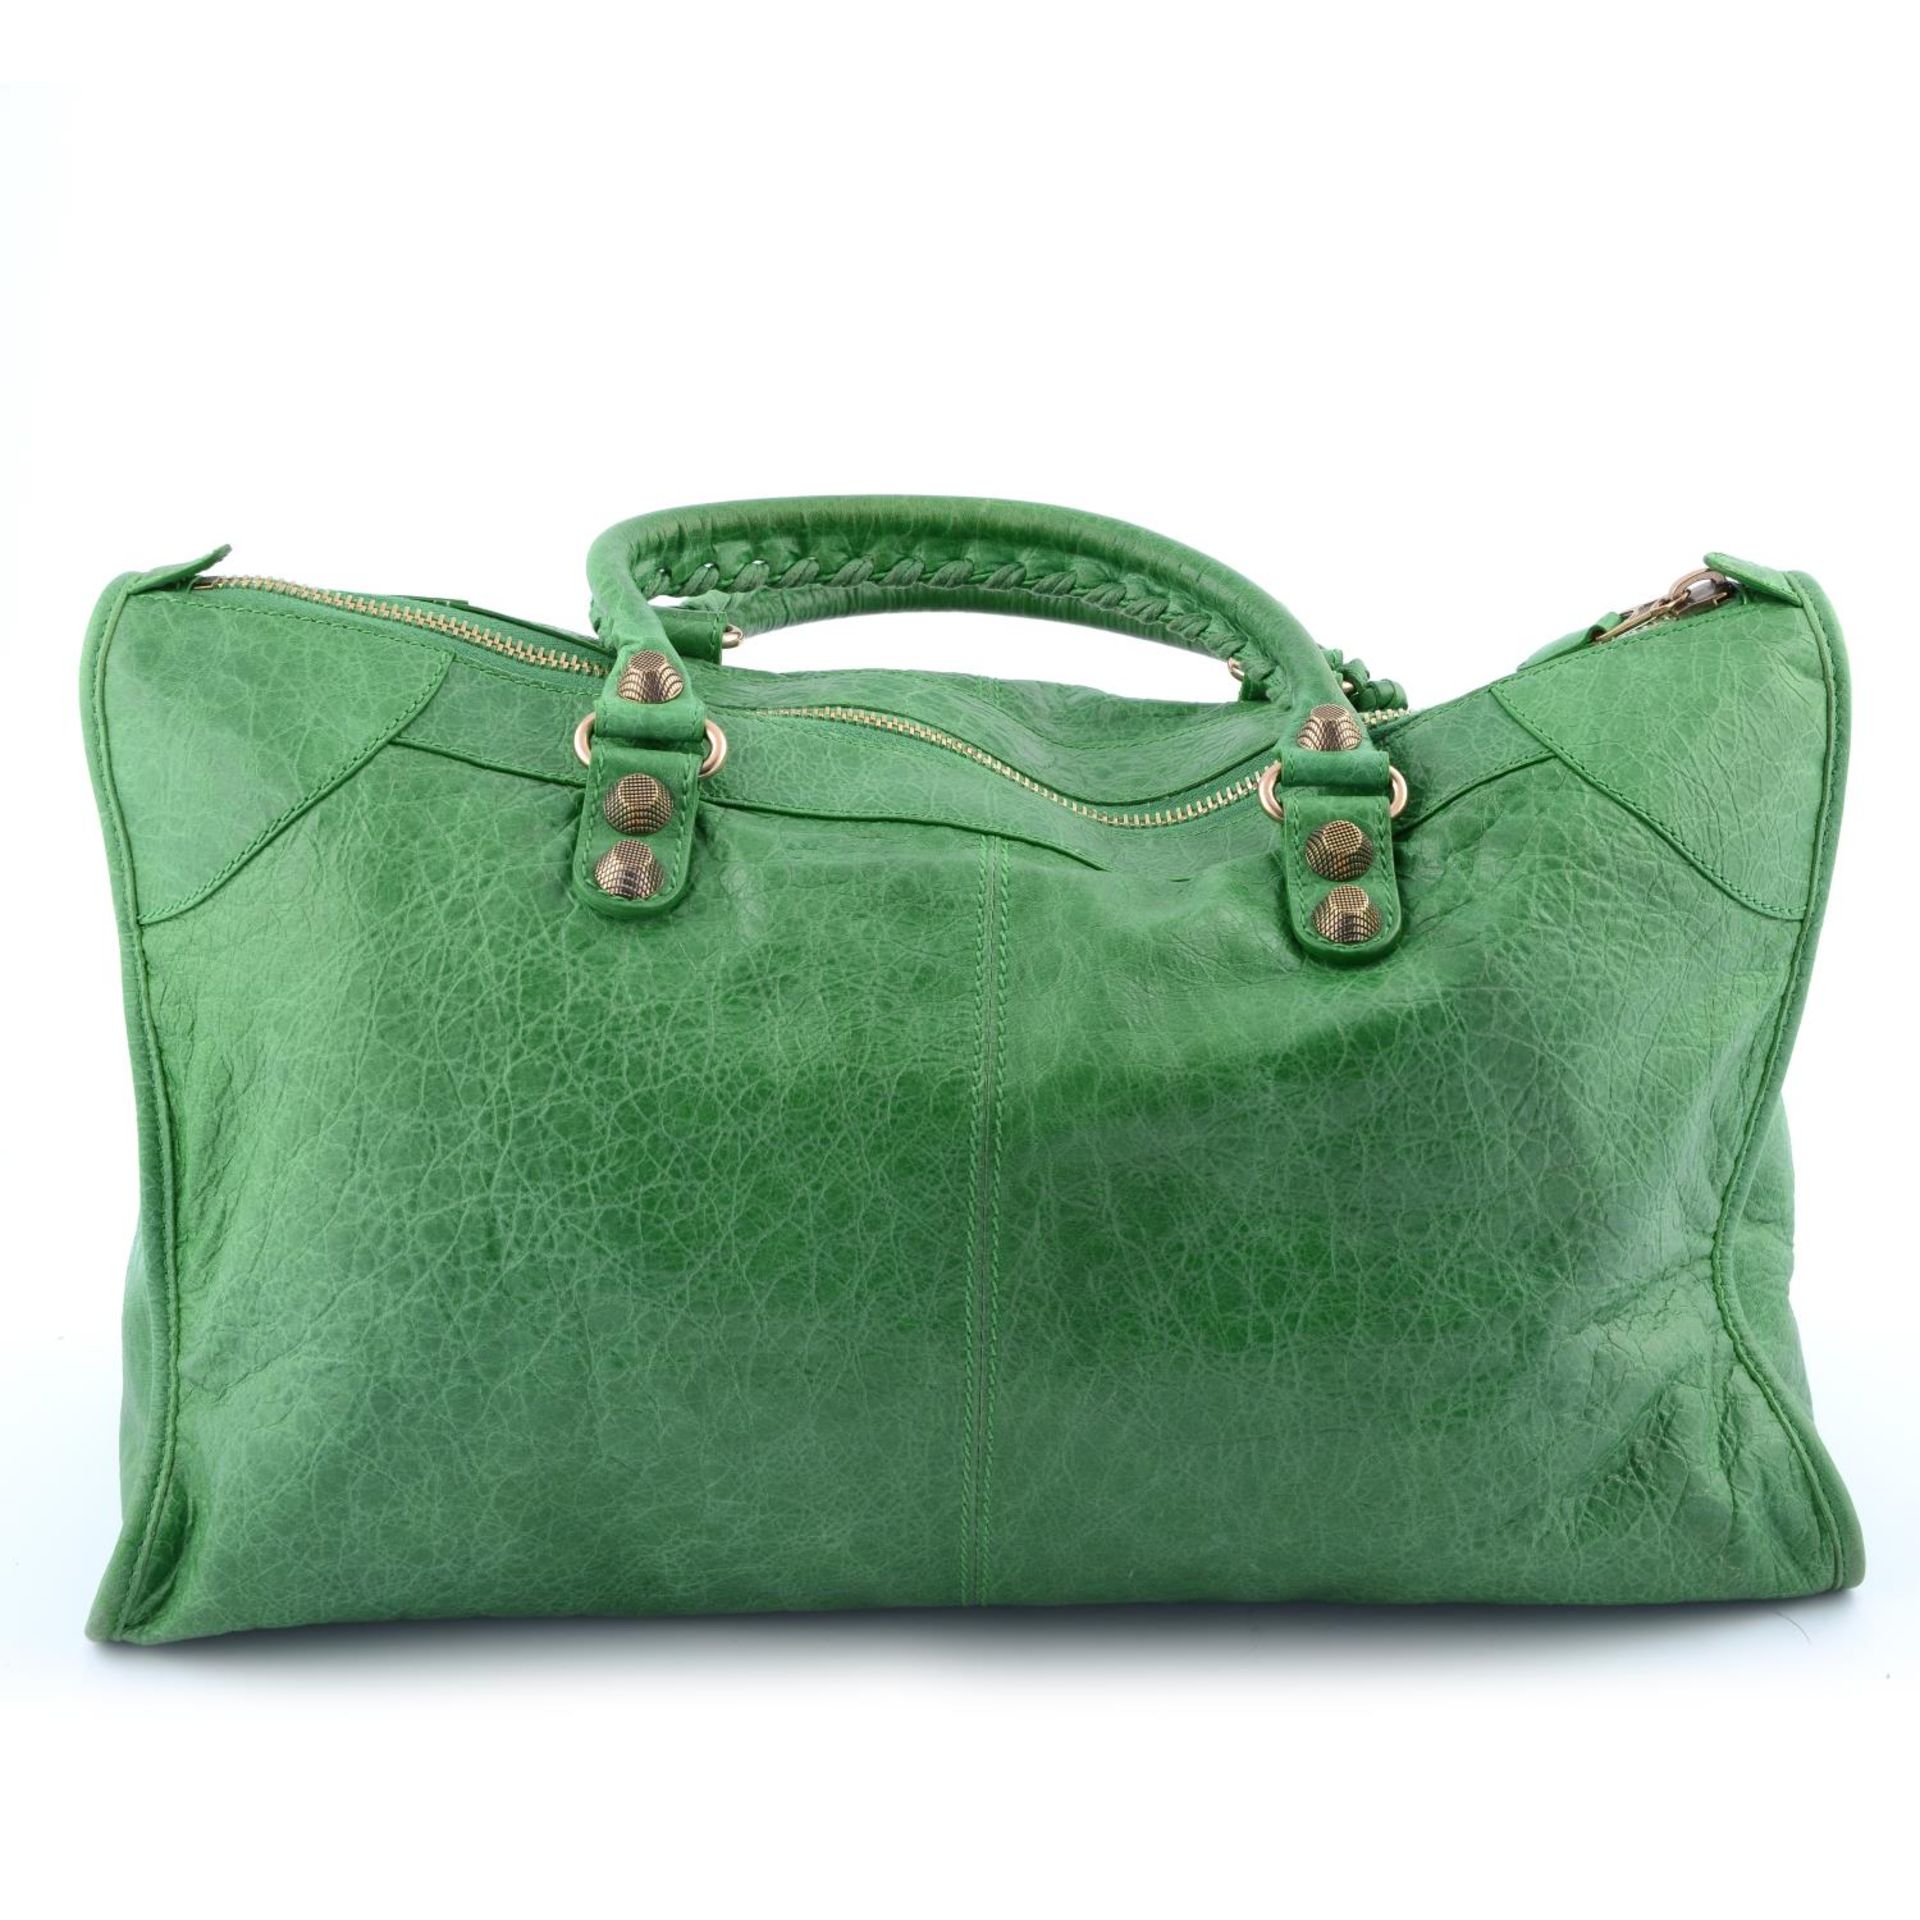 BALENCIAGA - a green Giant Work handbag. - Bild 2 aus 2